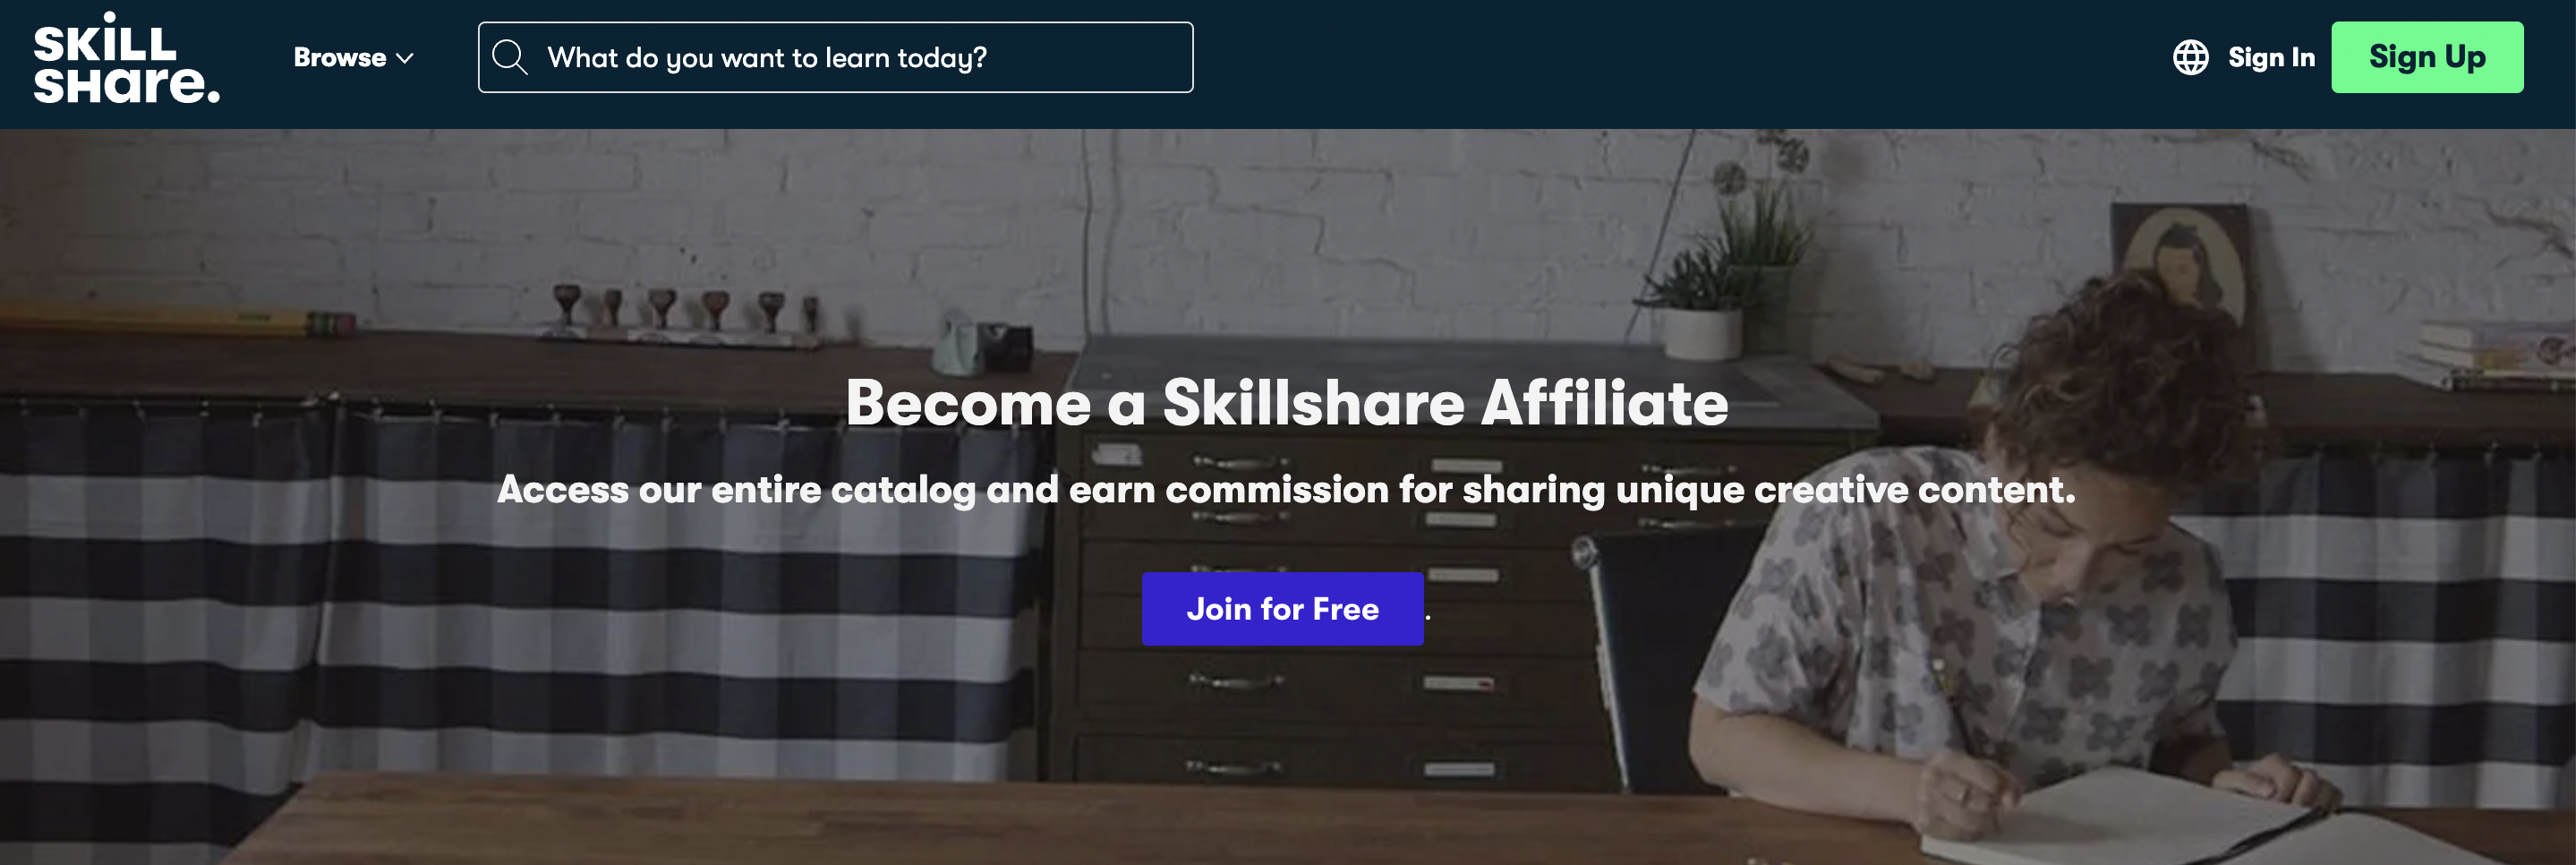 Skillshare affiliate Programm